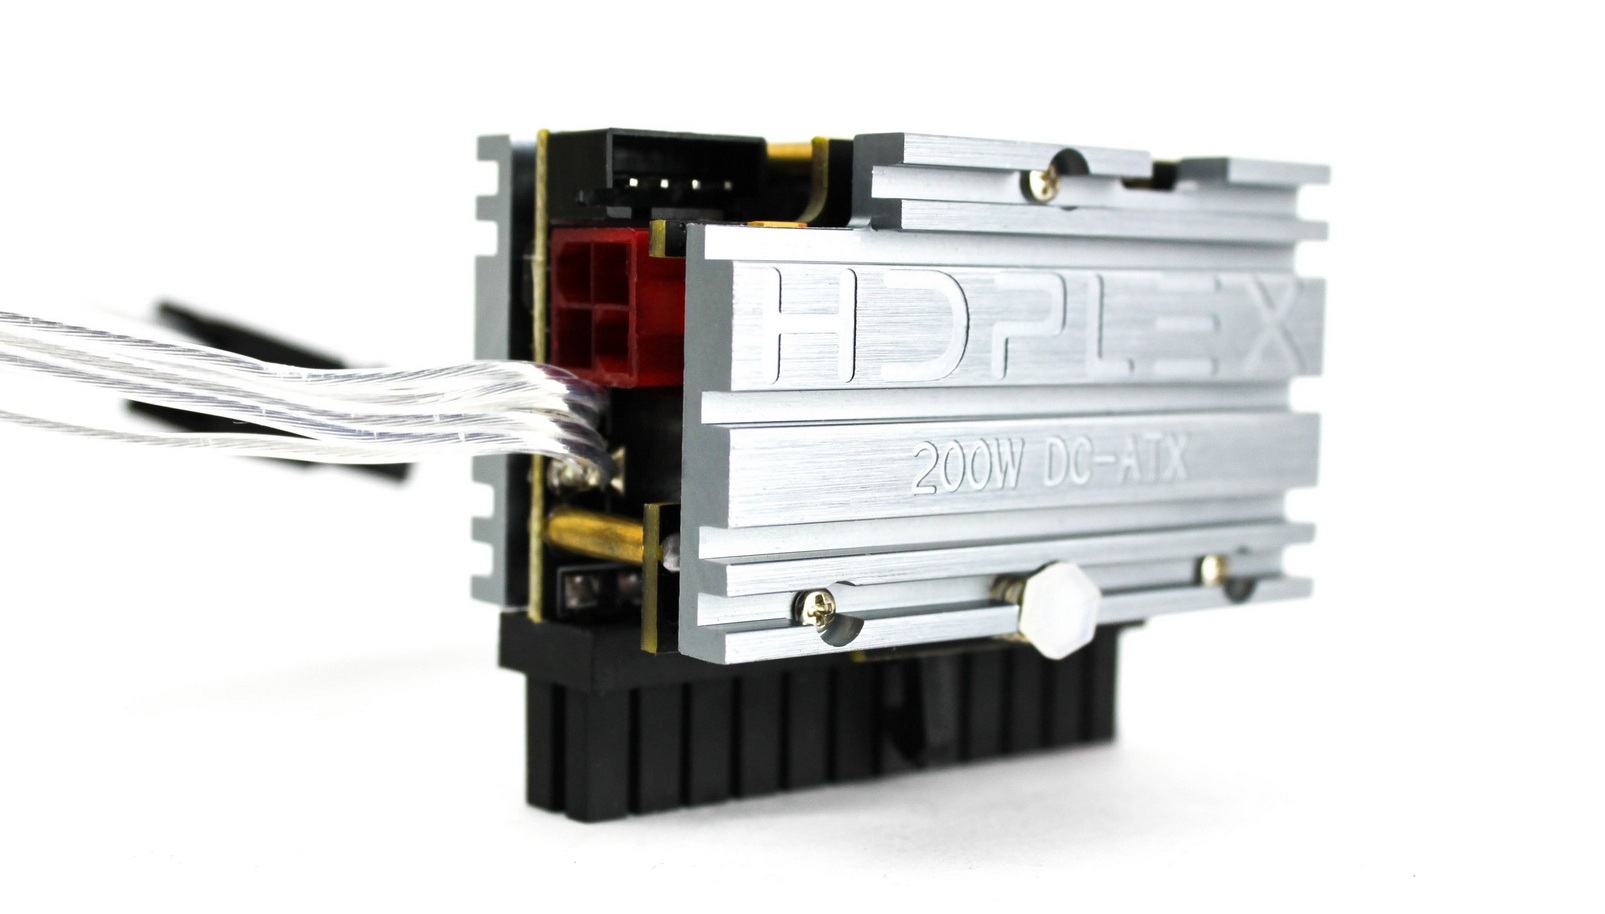 HDPLEX 200W DC-ATX